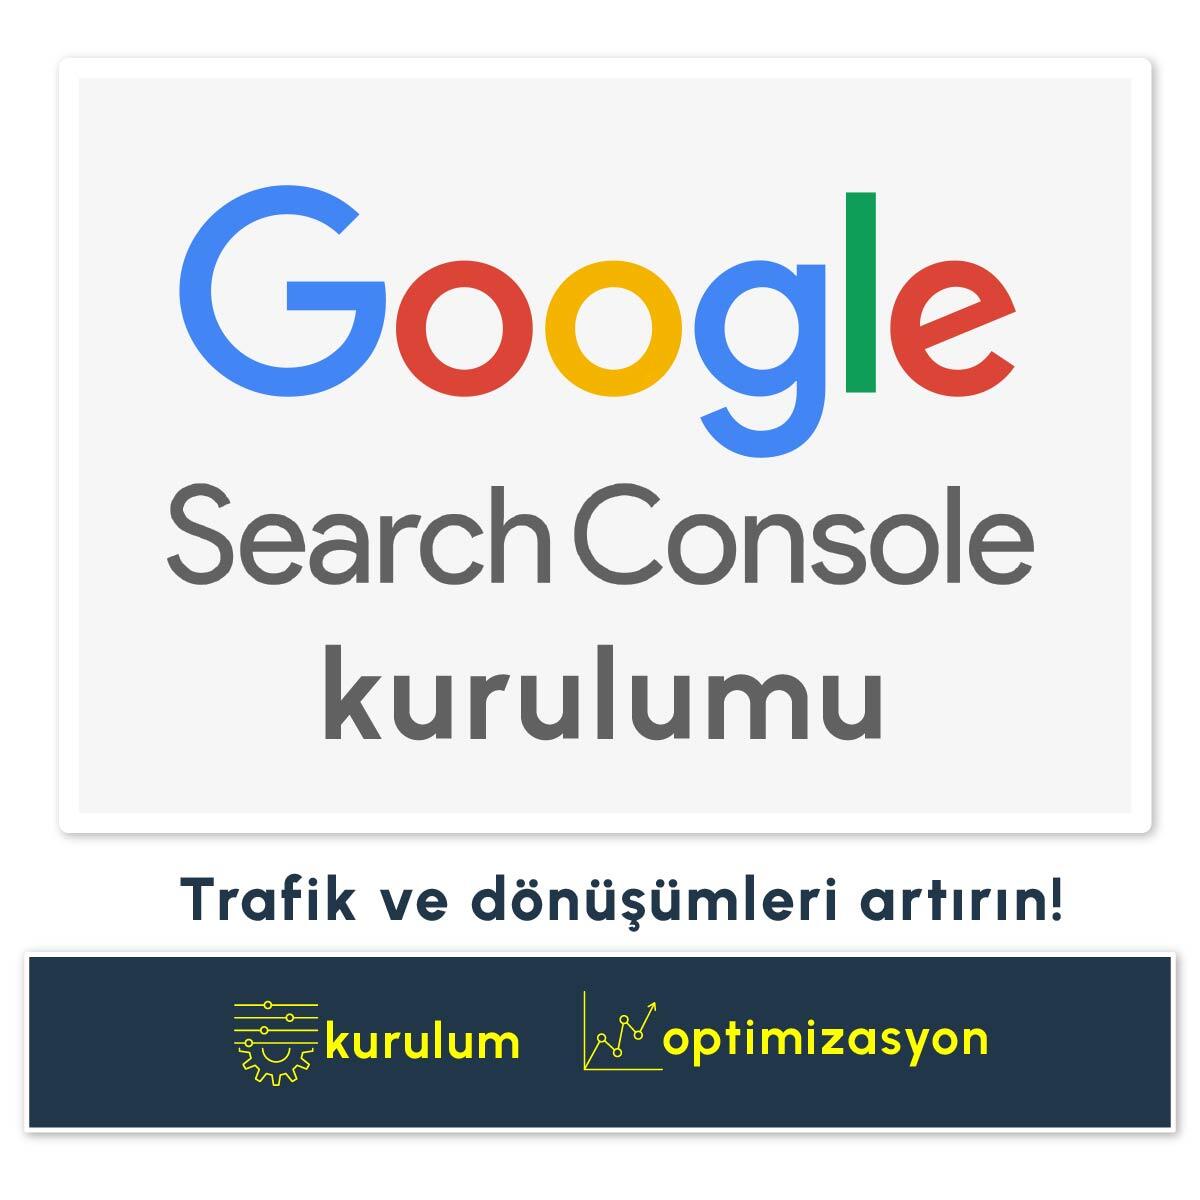 Google Search Console Hesap Kurulumu Hizmeti - Longway Media, Seo Ve Dijital Pazarlama Başarısı İçin